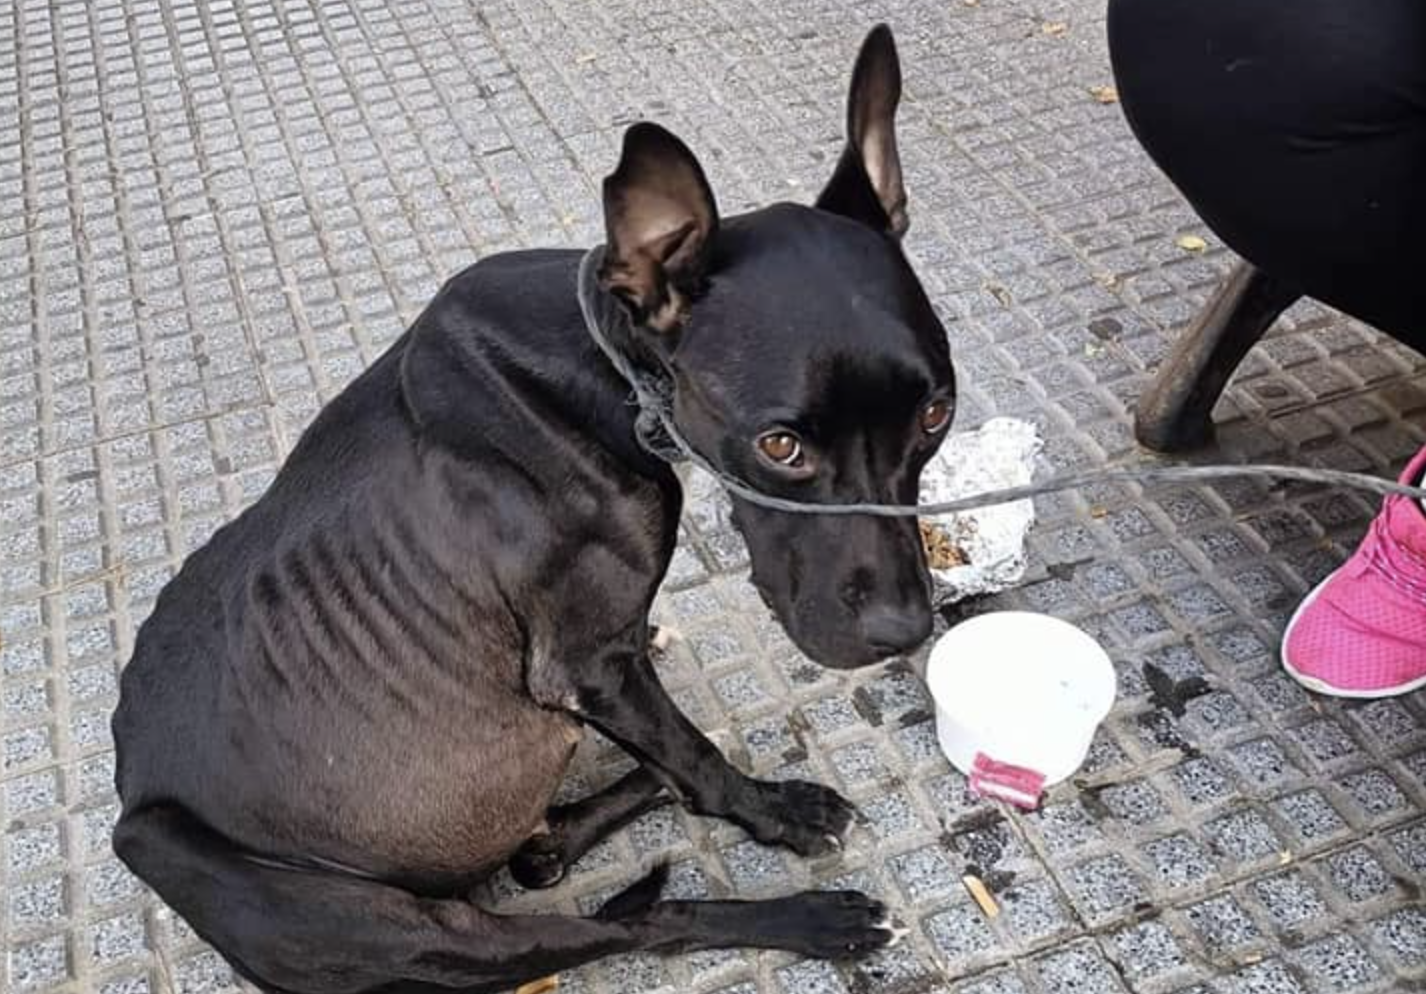 Perro en los huesos con los intestinos obstruidos encontrado en la calle, en Huelva.